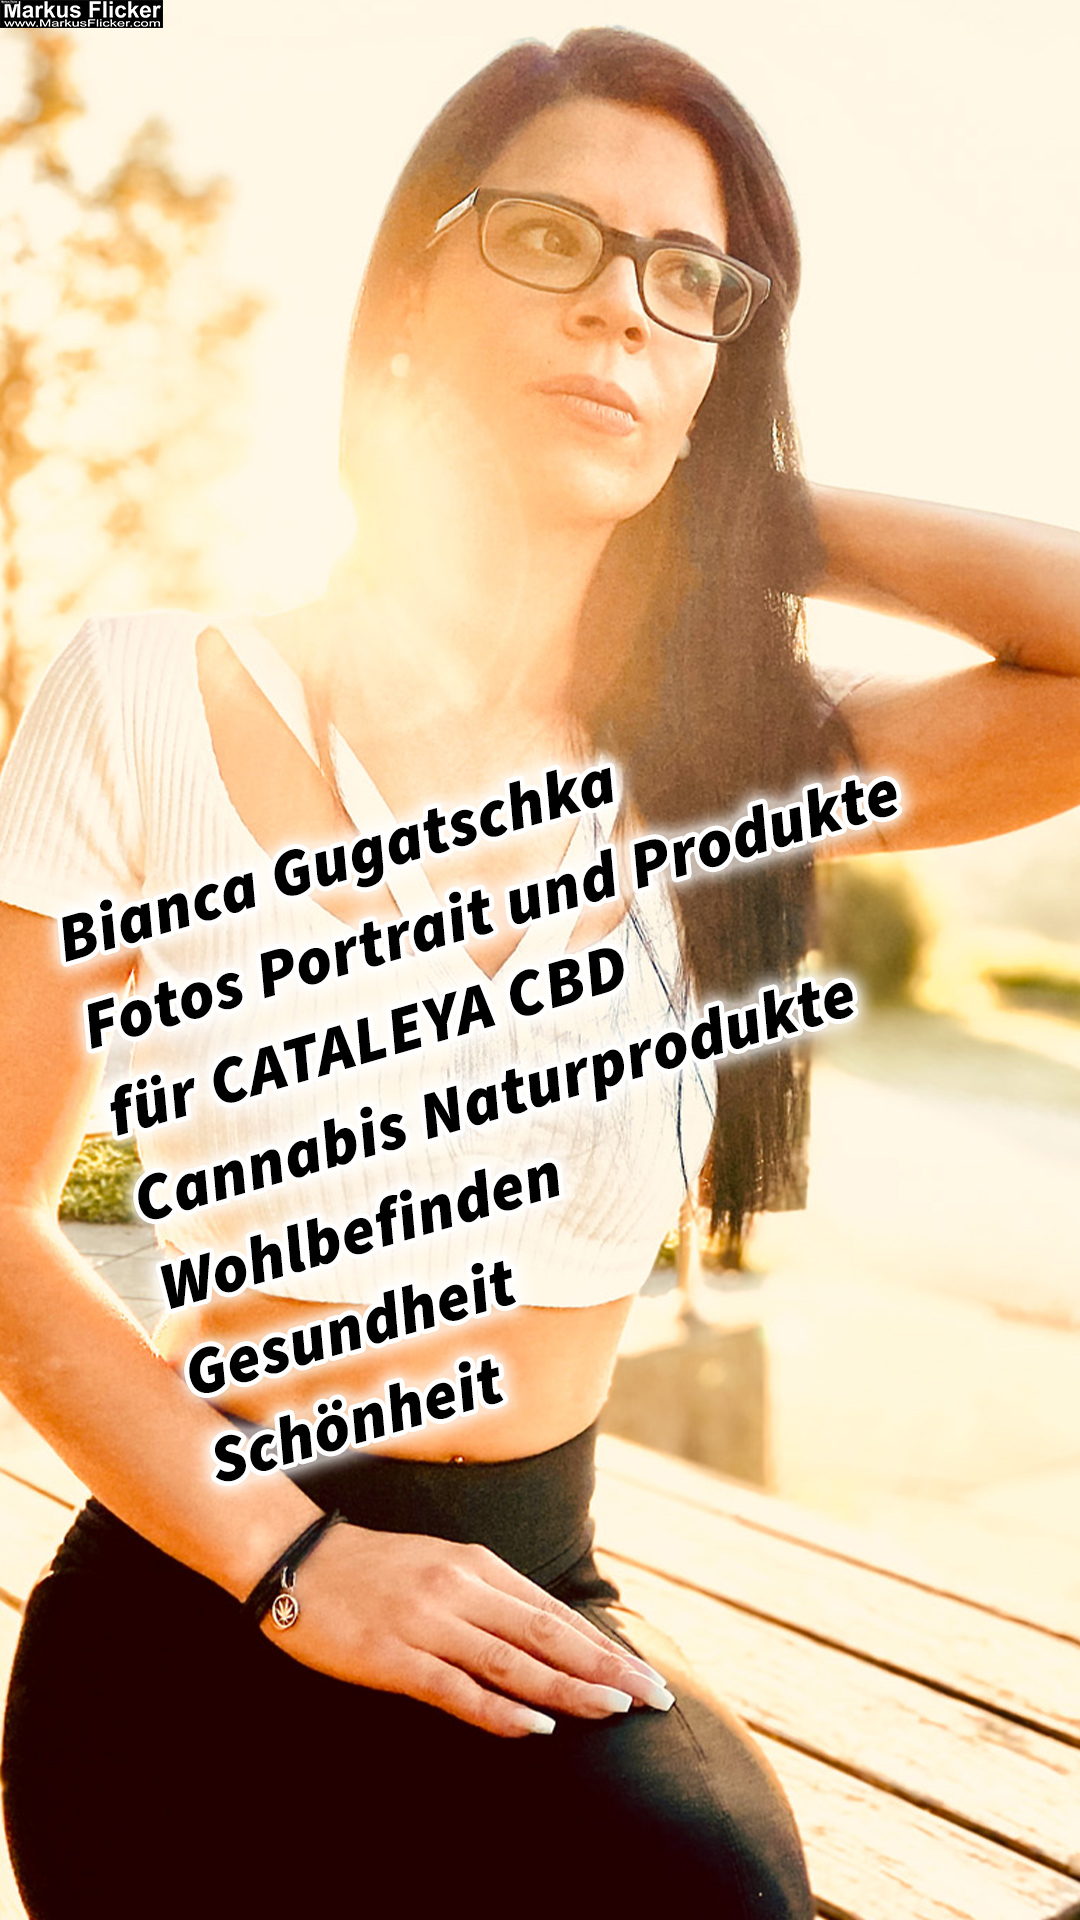 Female Model Bianca Fotos Portrait und Produkte für CBD Cannabis Naturprodukte Wohlbefinden Gesundheit Schönheit